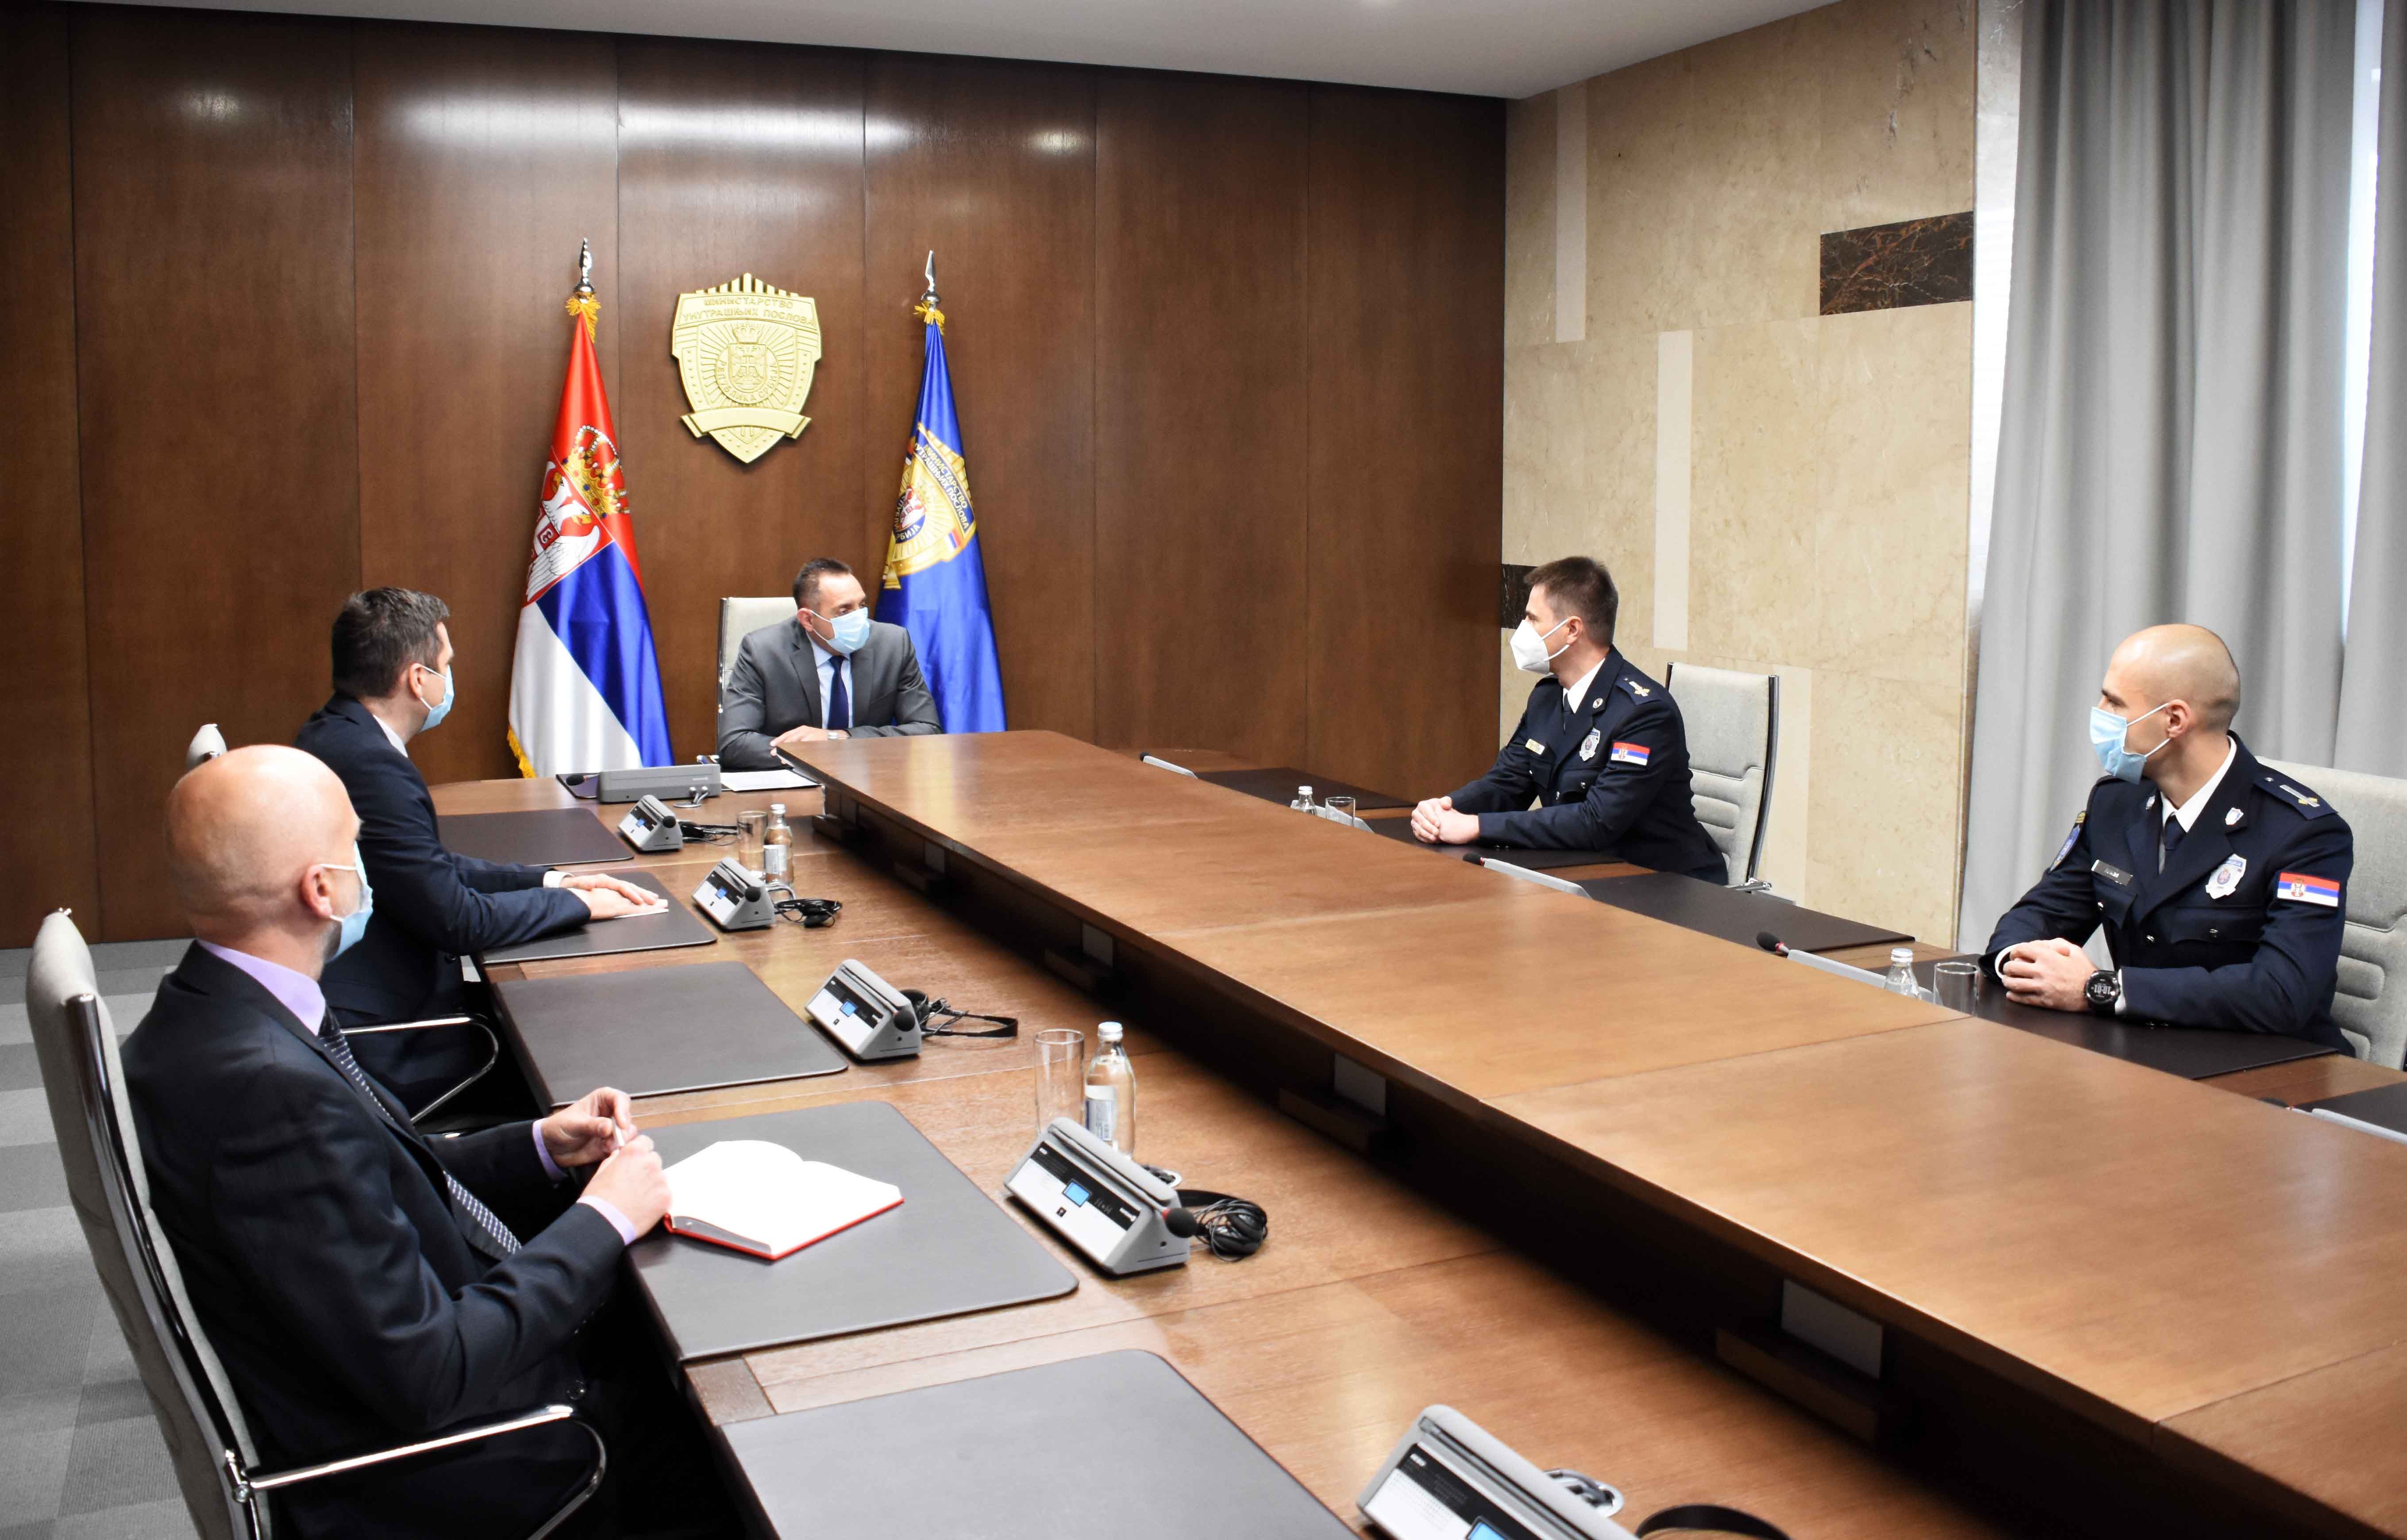 Ministar Vulin razgovarao sa pripadnicima policije koji će zameniti kolege u mirovnoj operaciji UN na Kipru